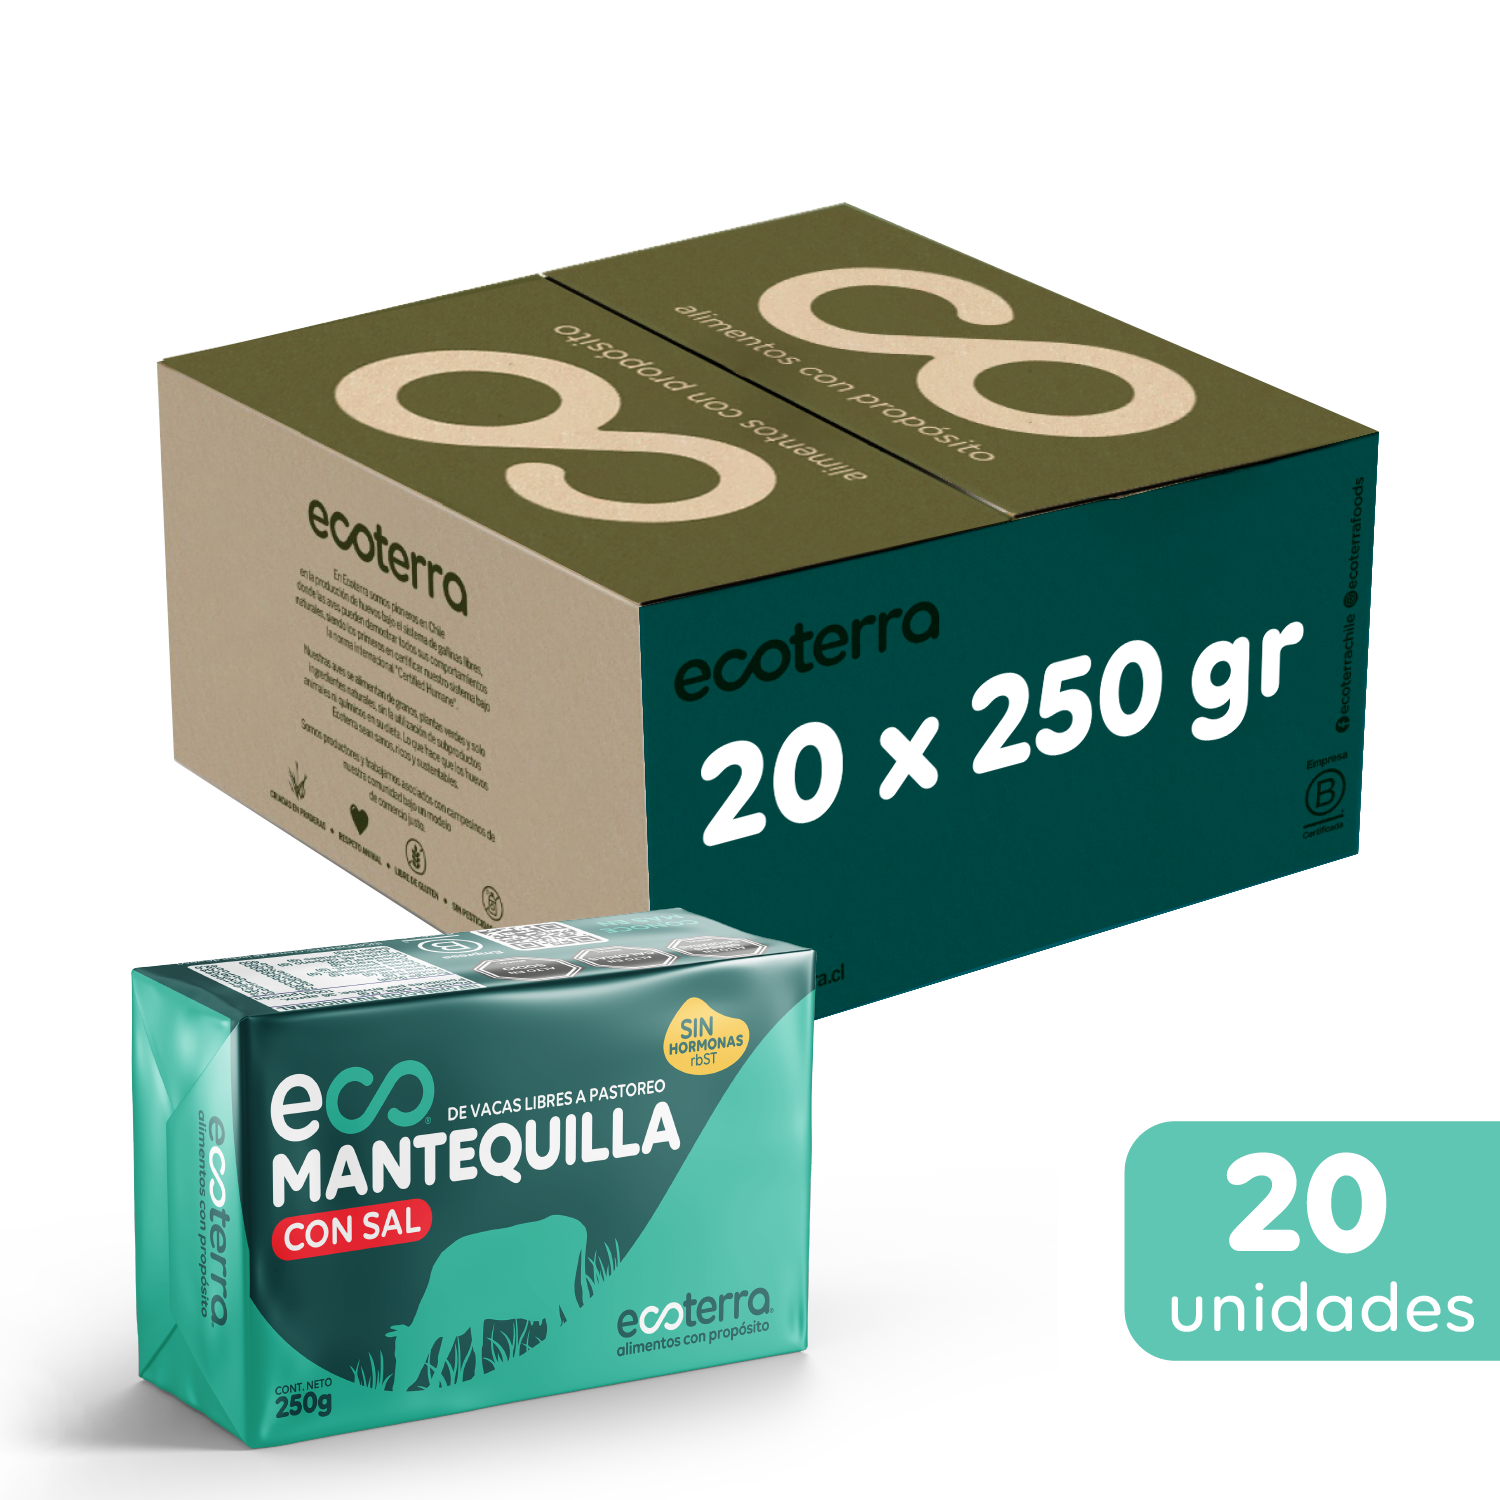 EcoMantequilla con Sal 250 gr x 20 und